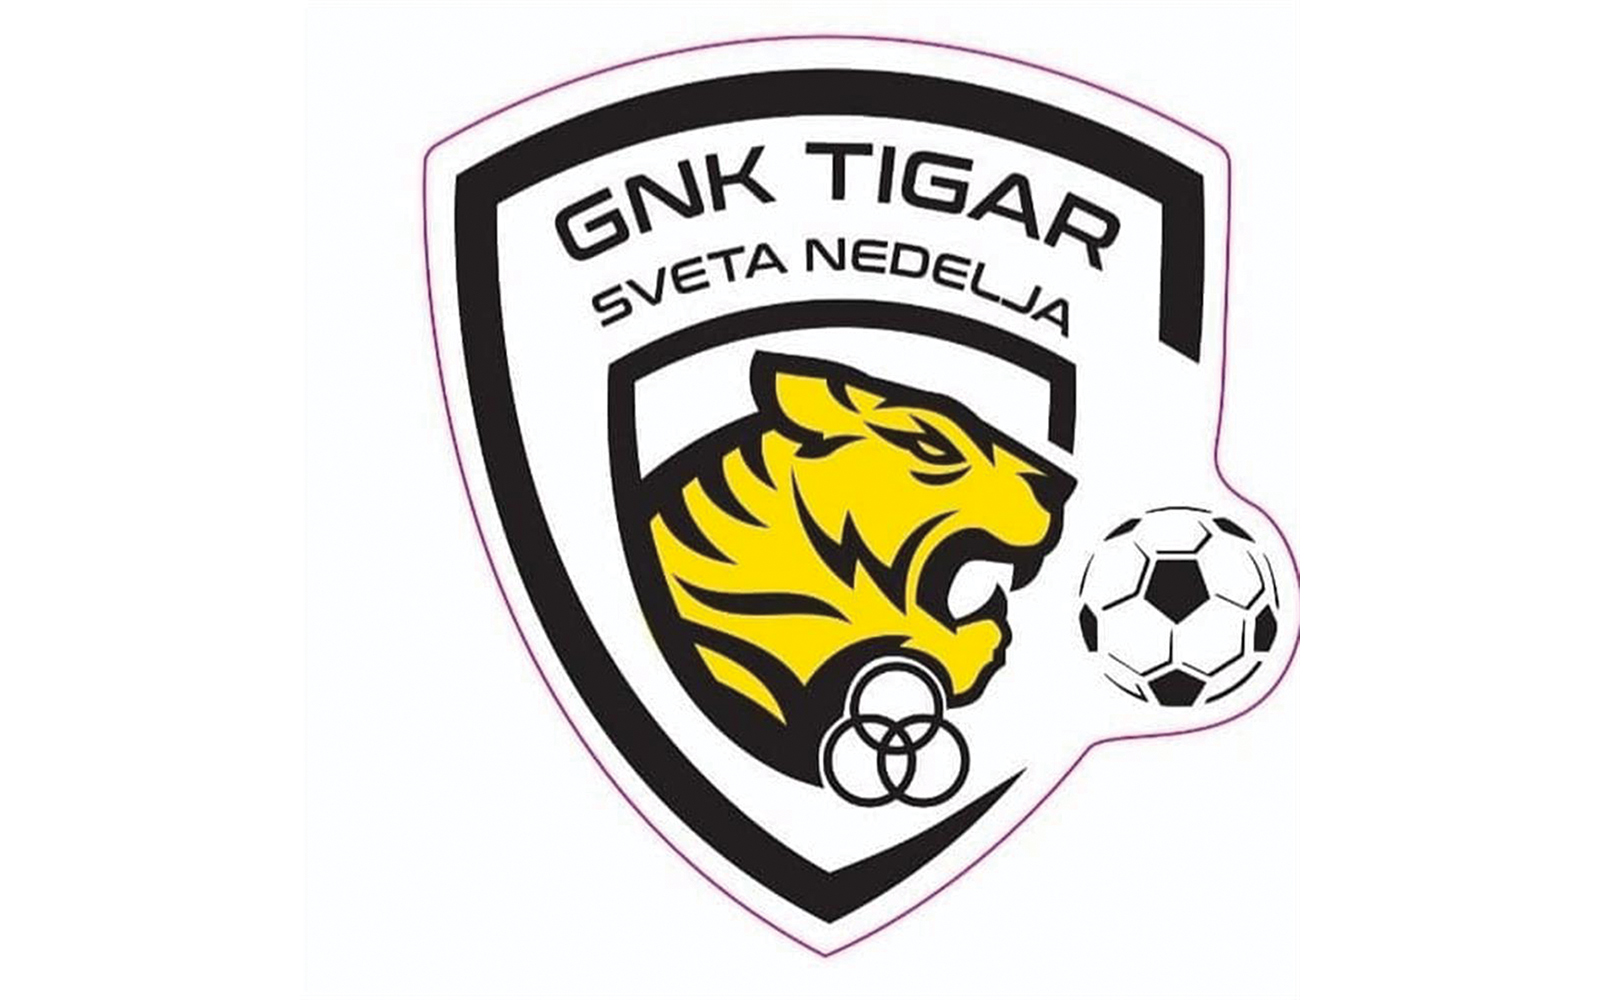 4. NL sredite Zagreb  B - 19. kolo
Gradii - Tigar Sveta Nedelja 0:1 (0:1)